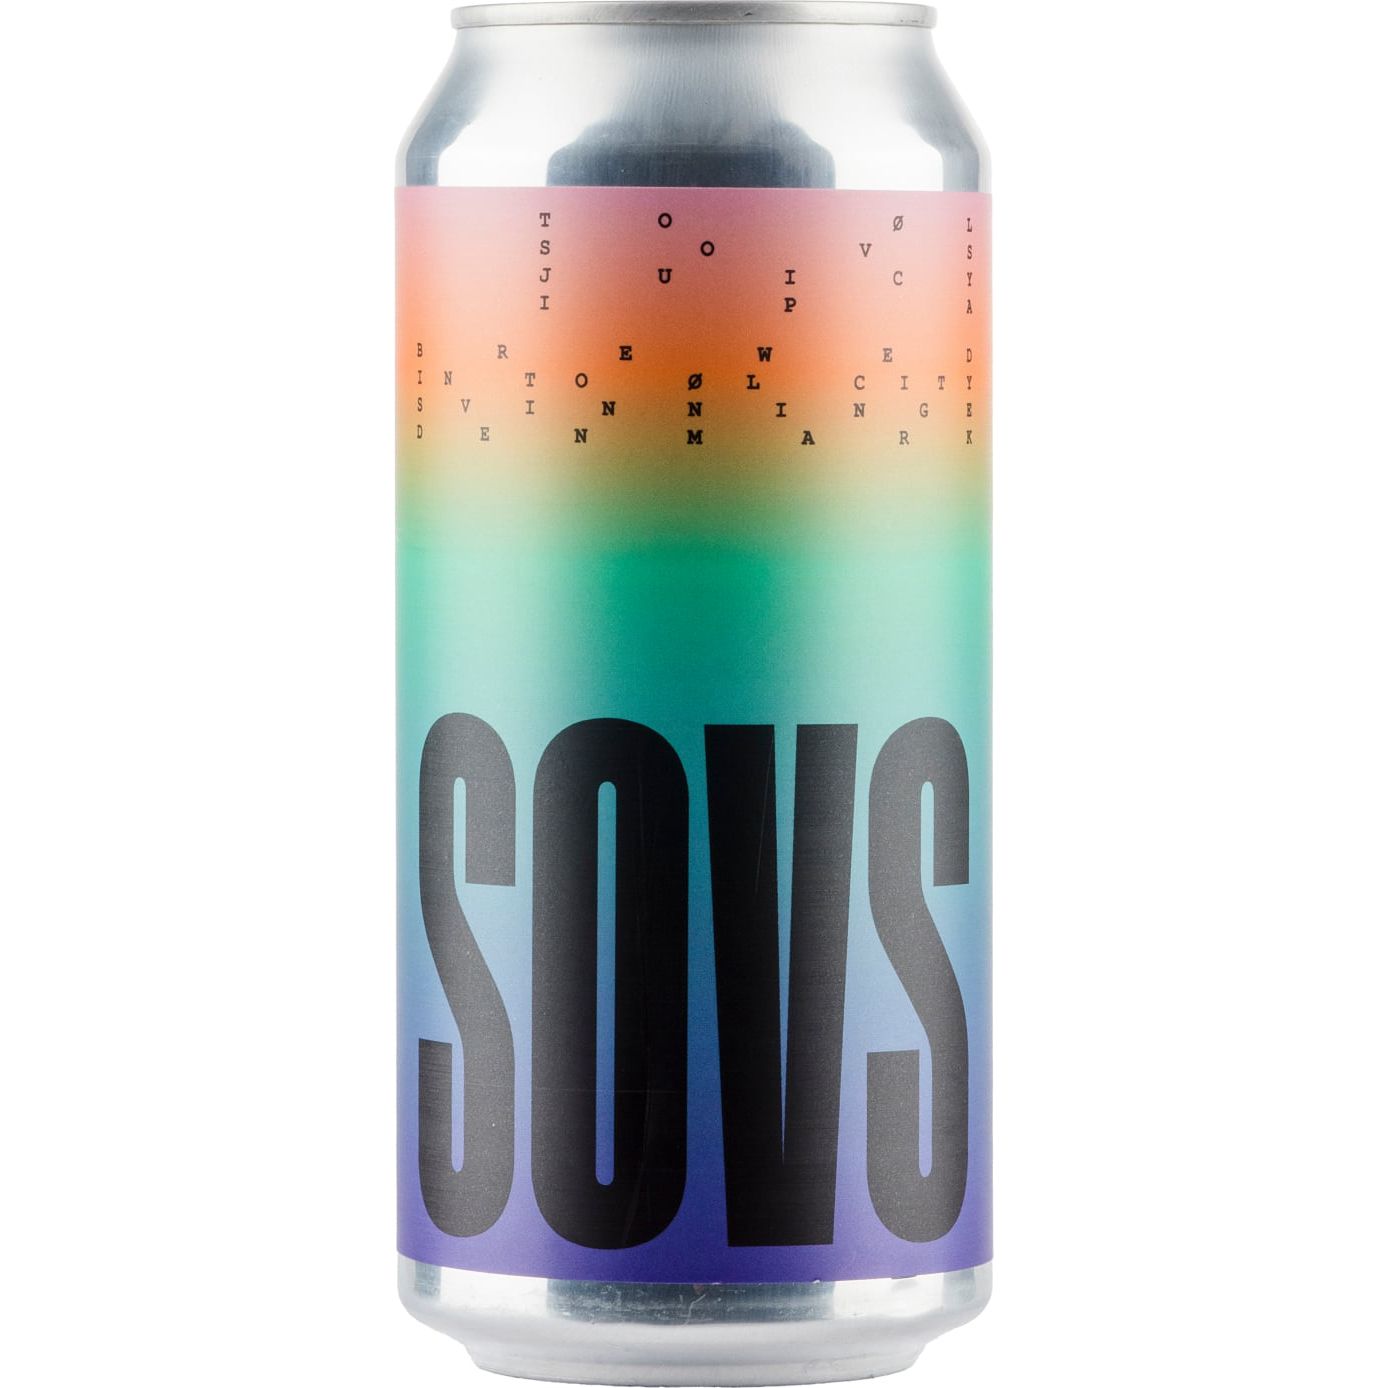 Пиво To ØI SOVS светлое 6% 0.44 л ж/б - фото 1